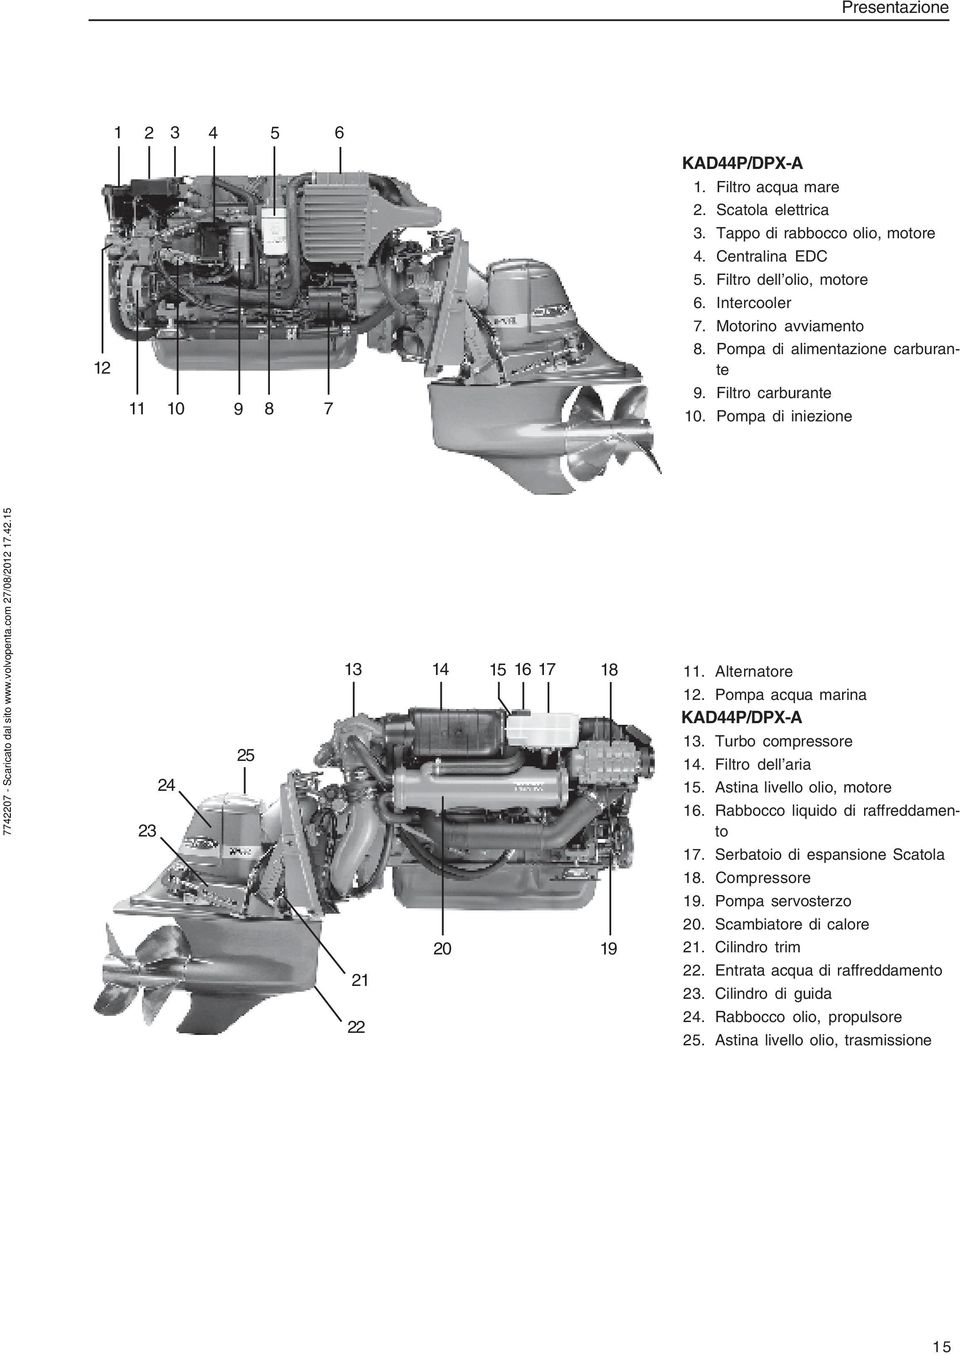 Pompa acqua marina KAD44P/DPX-A 13. Turbo compressore 14. Filtro dell aria 15. Astina livello olio, motore 16. Rabbocco liquido di raffreddamento 17. Serbatoio di espansione Scatola 18.